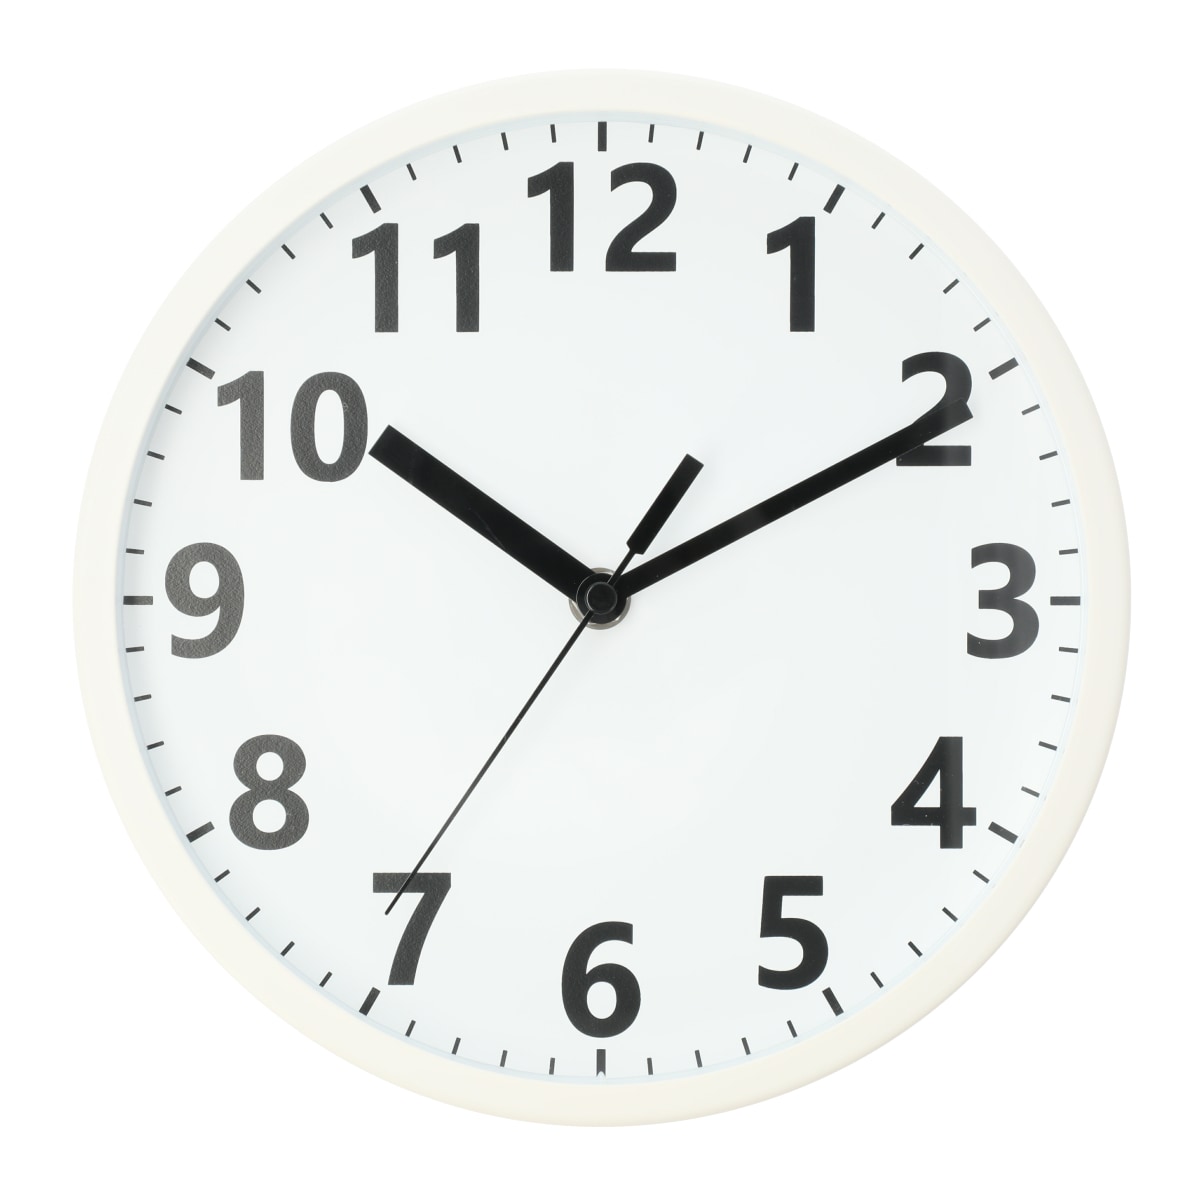 ニトリのステップ秒針 掛け時計 クレア23ST-WH(ホワイト)   【1年保証】(インテリア雑貨)